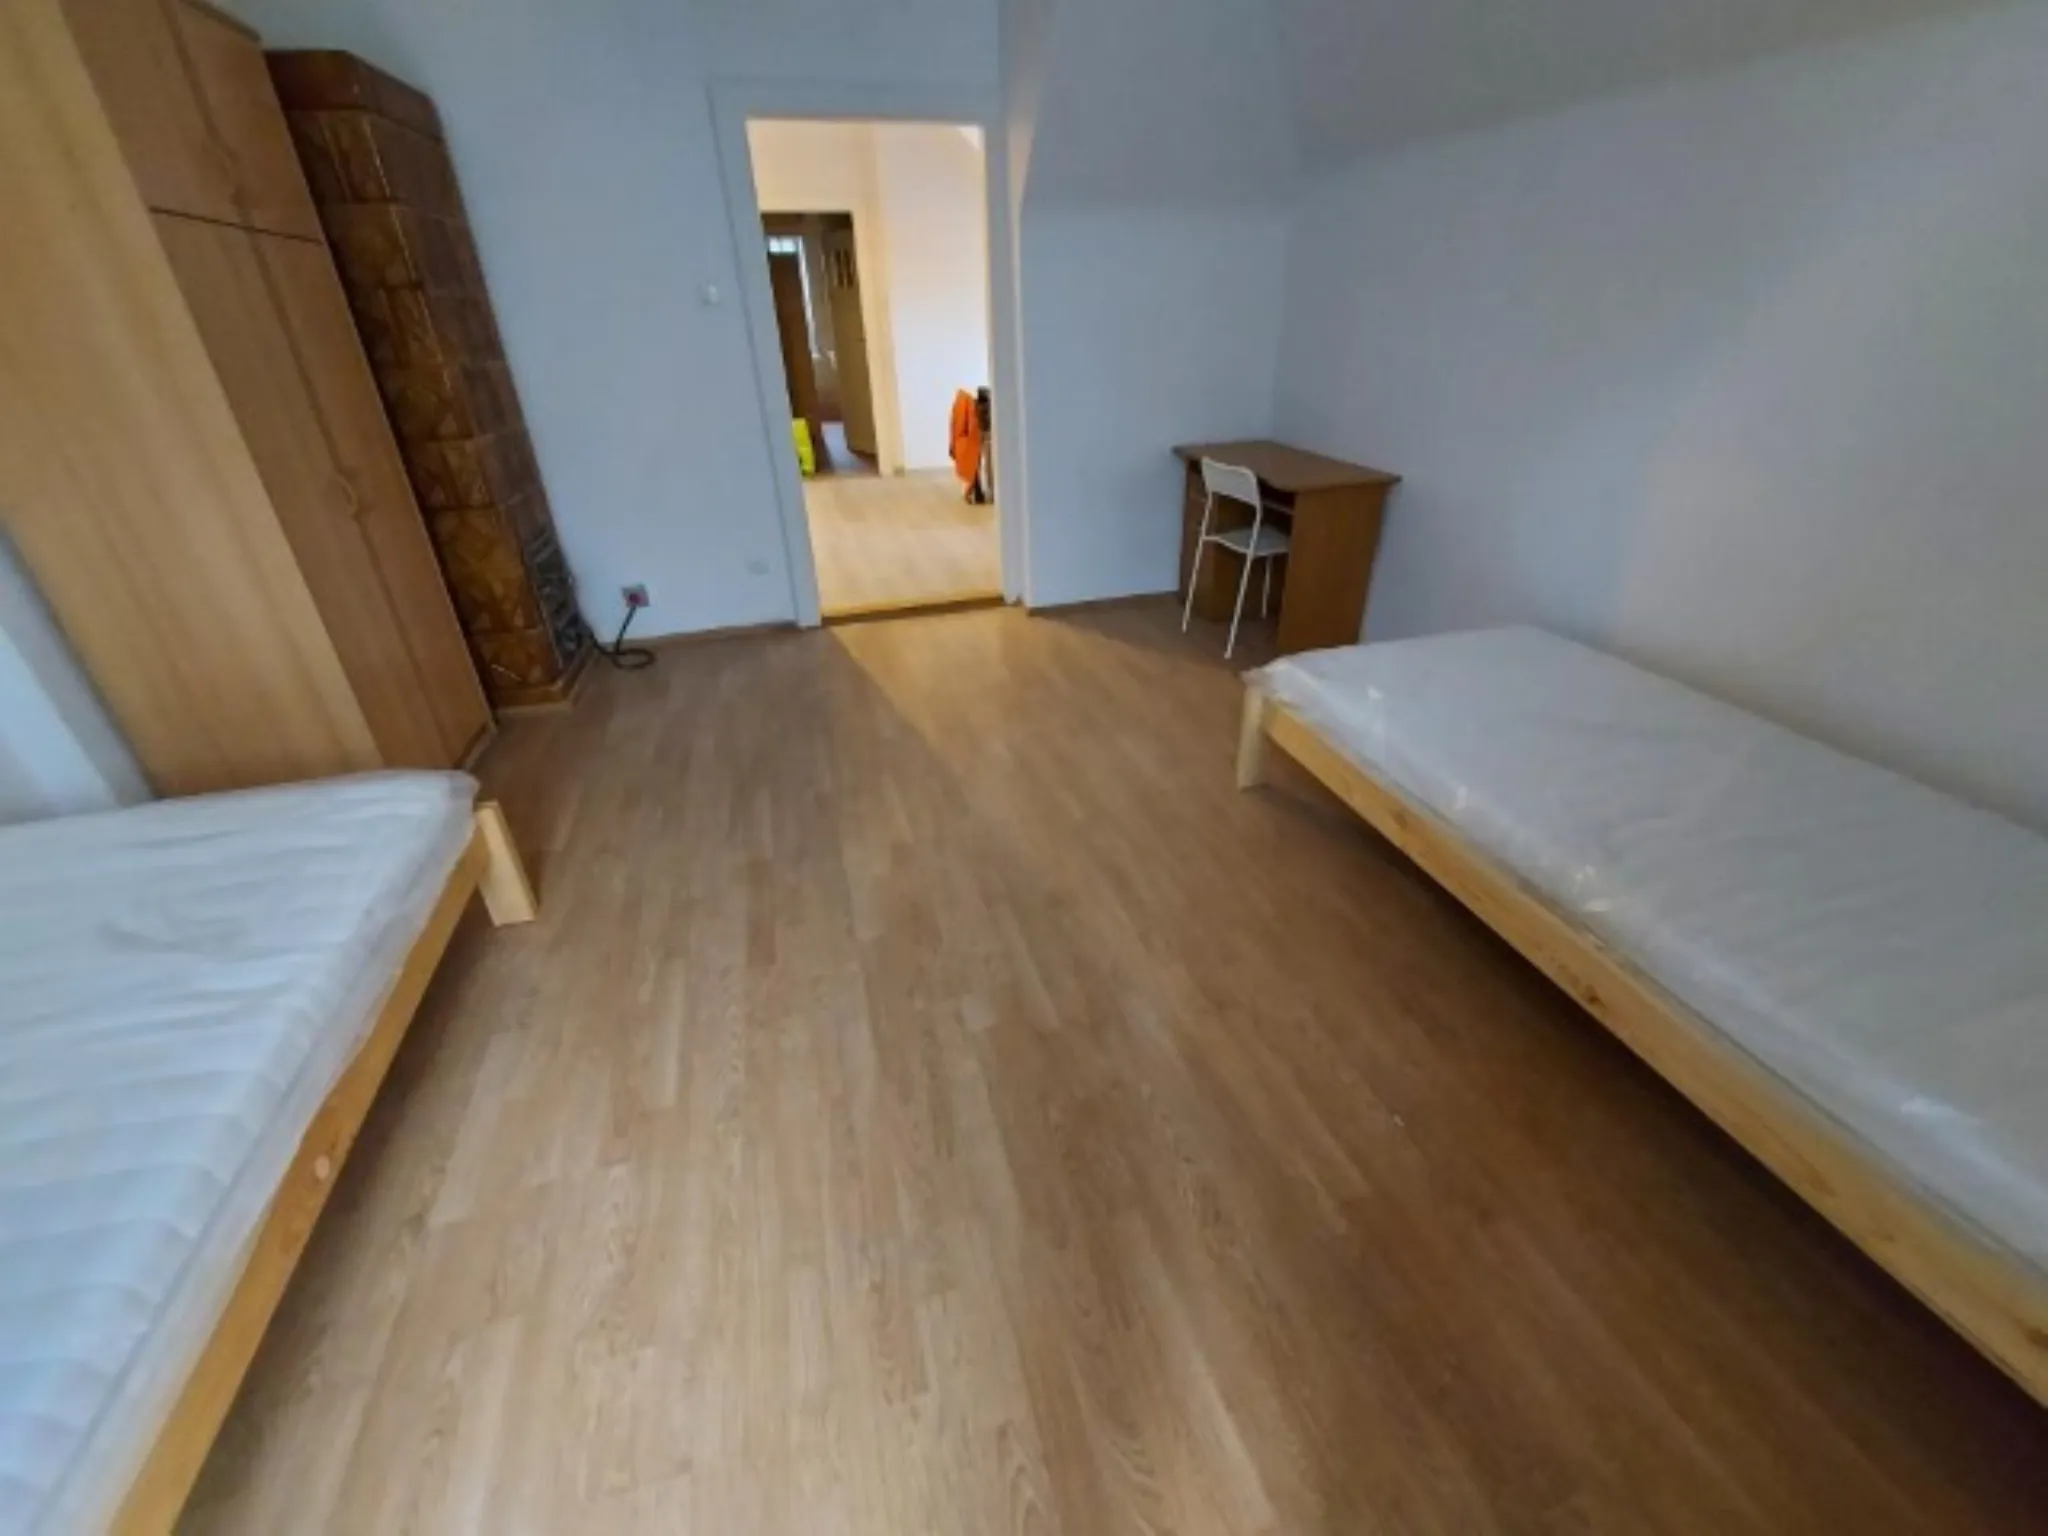 Krowodrza mieszkanie sprzedam - Mieszkanie na sprzedaż Kraków